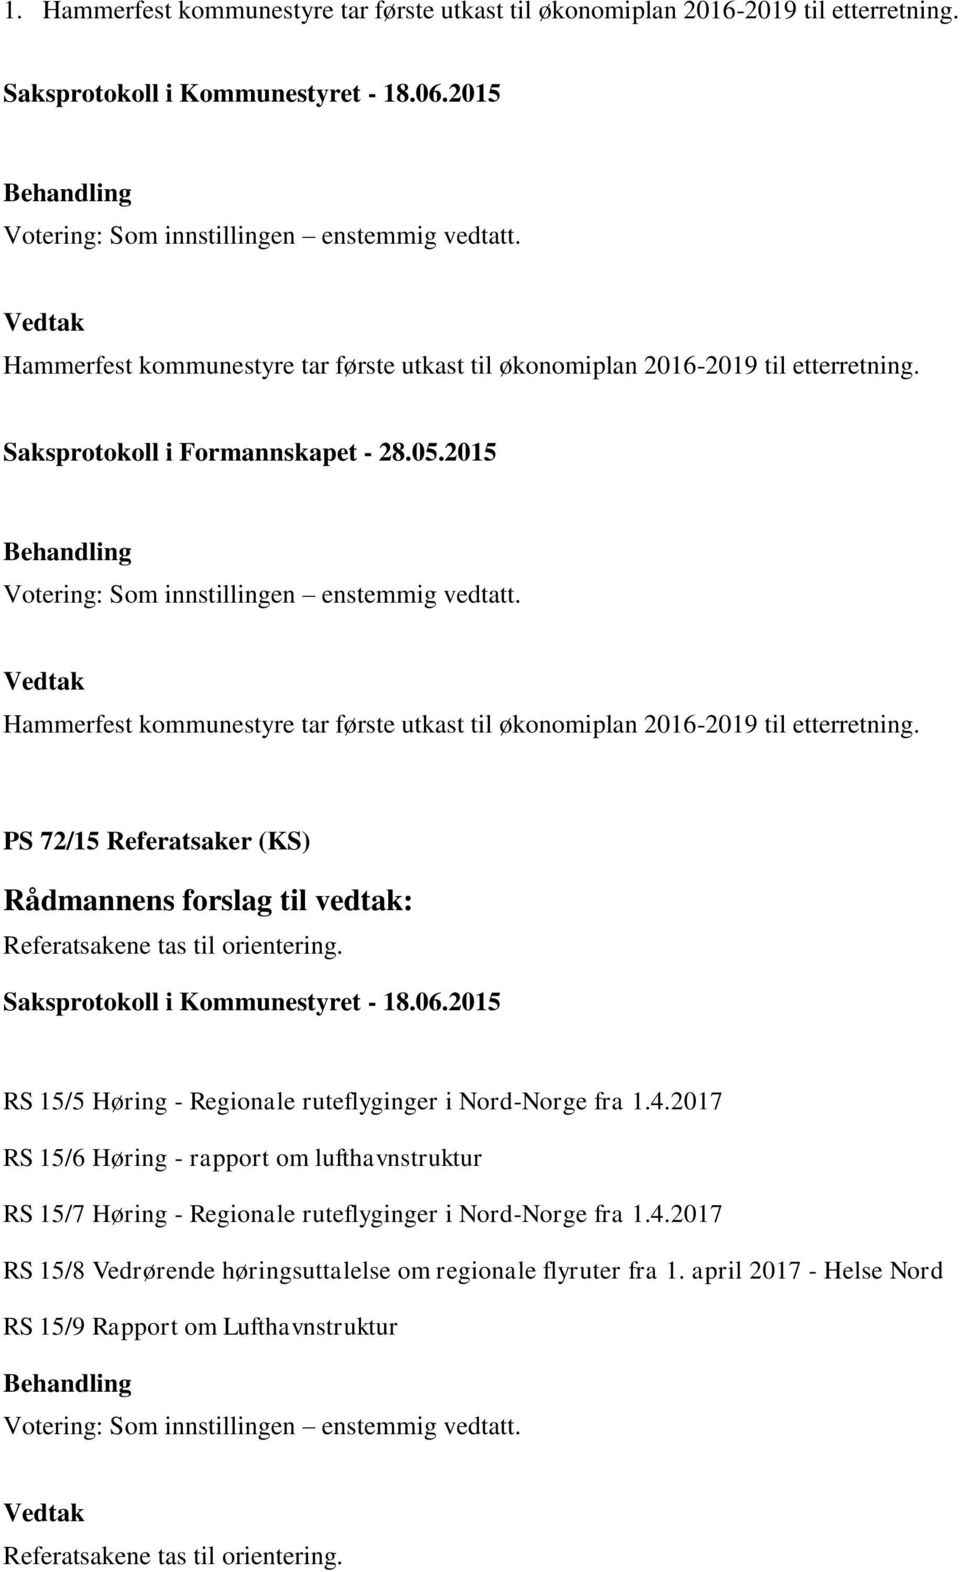 PS 72/15 Referatsaker (KS) Referatsakene tas til orientering. RS 15/5 Høring - Regionale ruteflyginger i Nord-Norge fra 1.4.